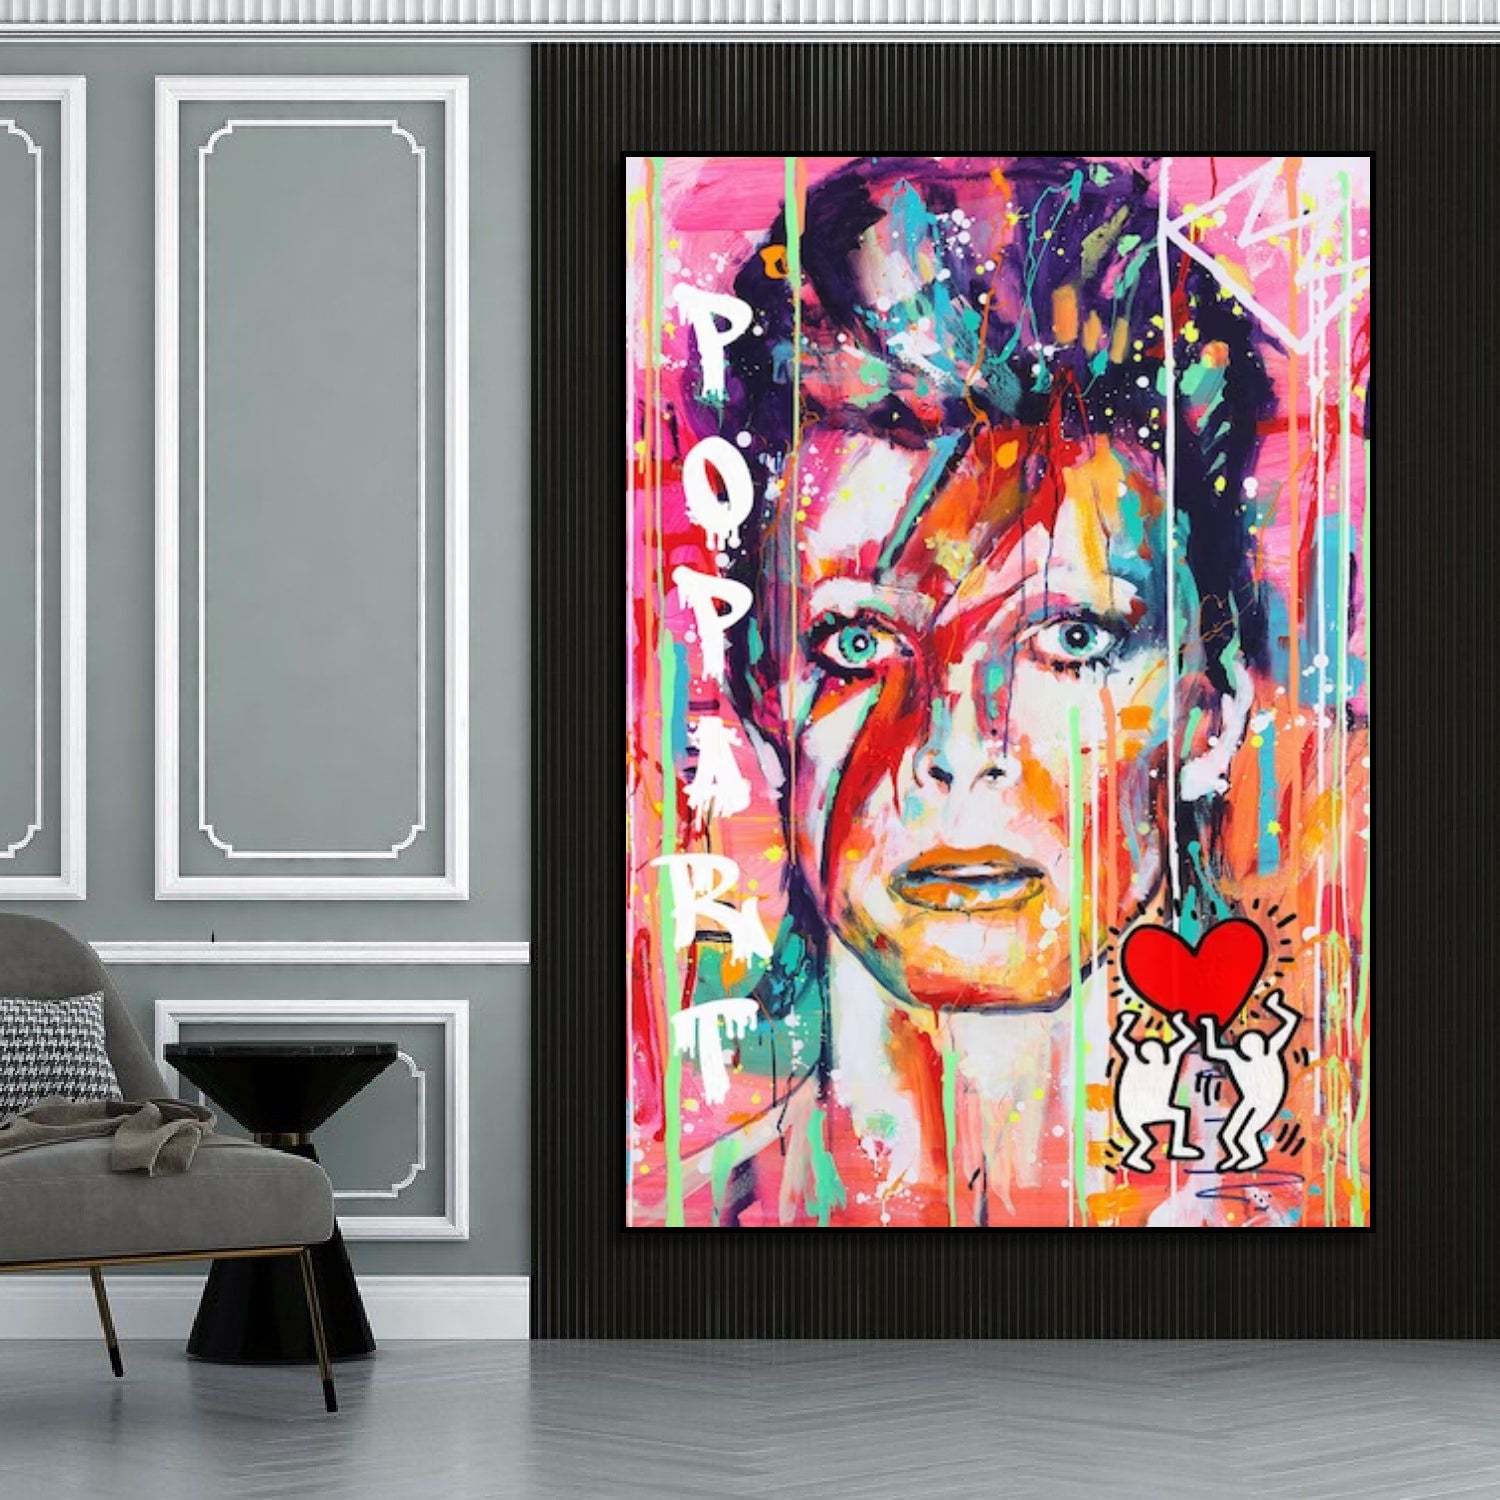 Famous Rock Musician David Bowie Pop Art Painting